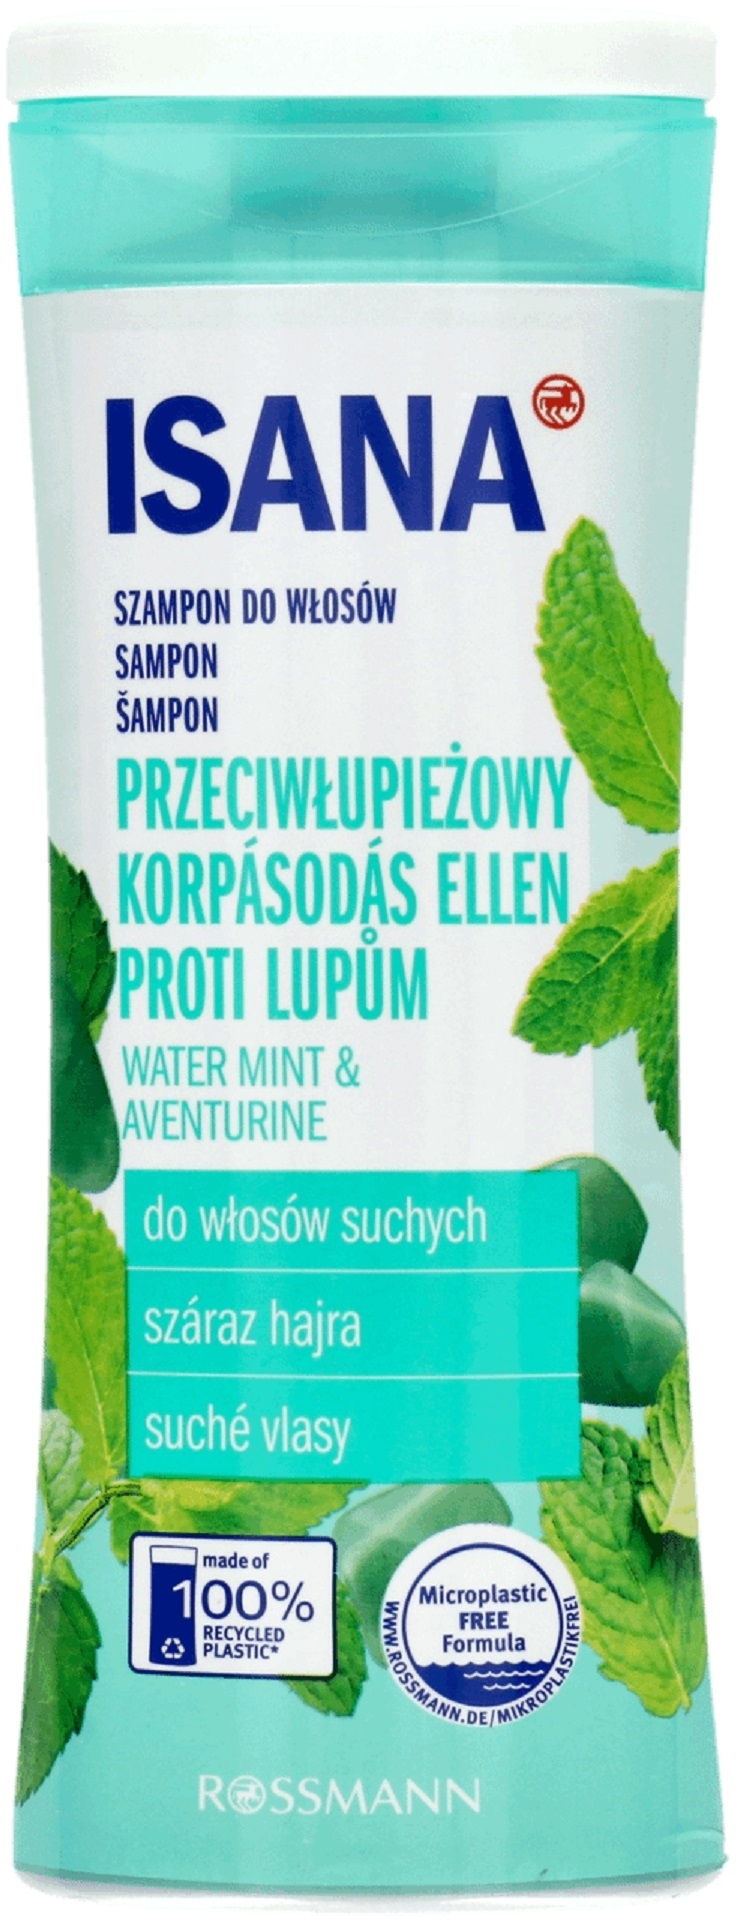 szampon do wlosow isana kwc